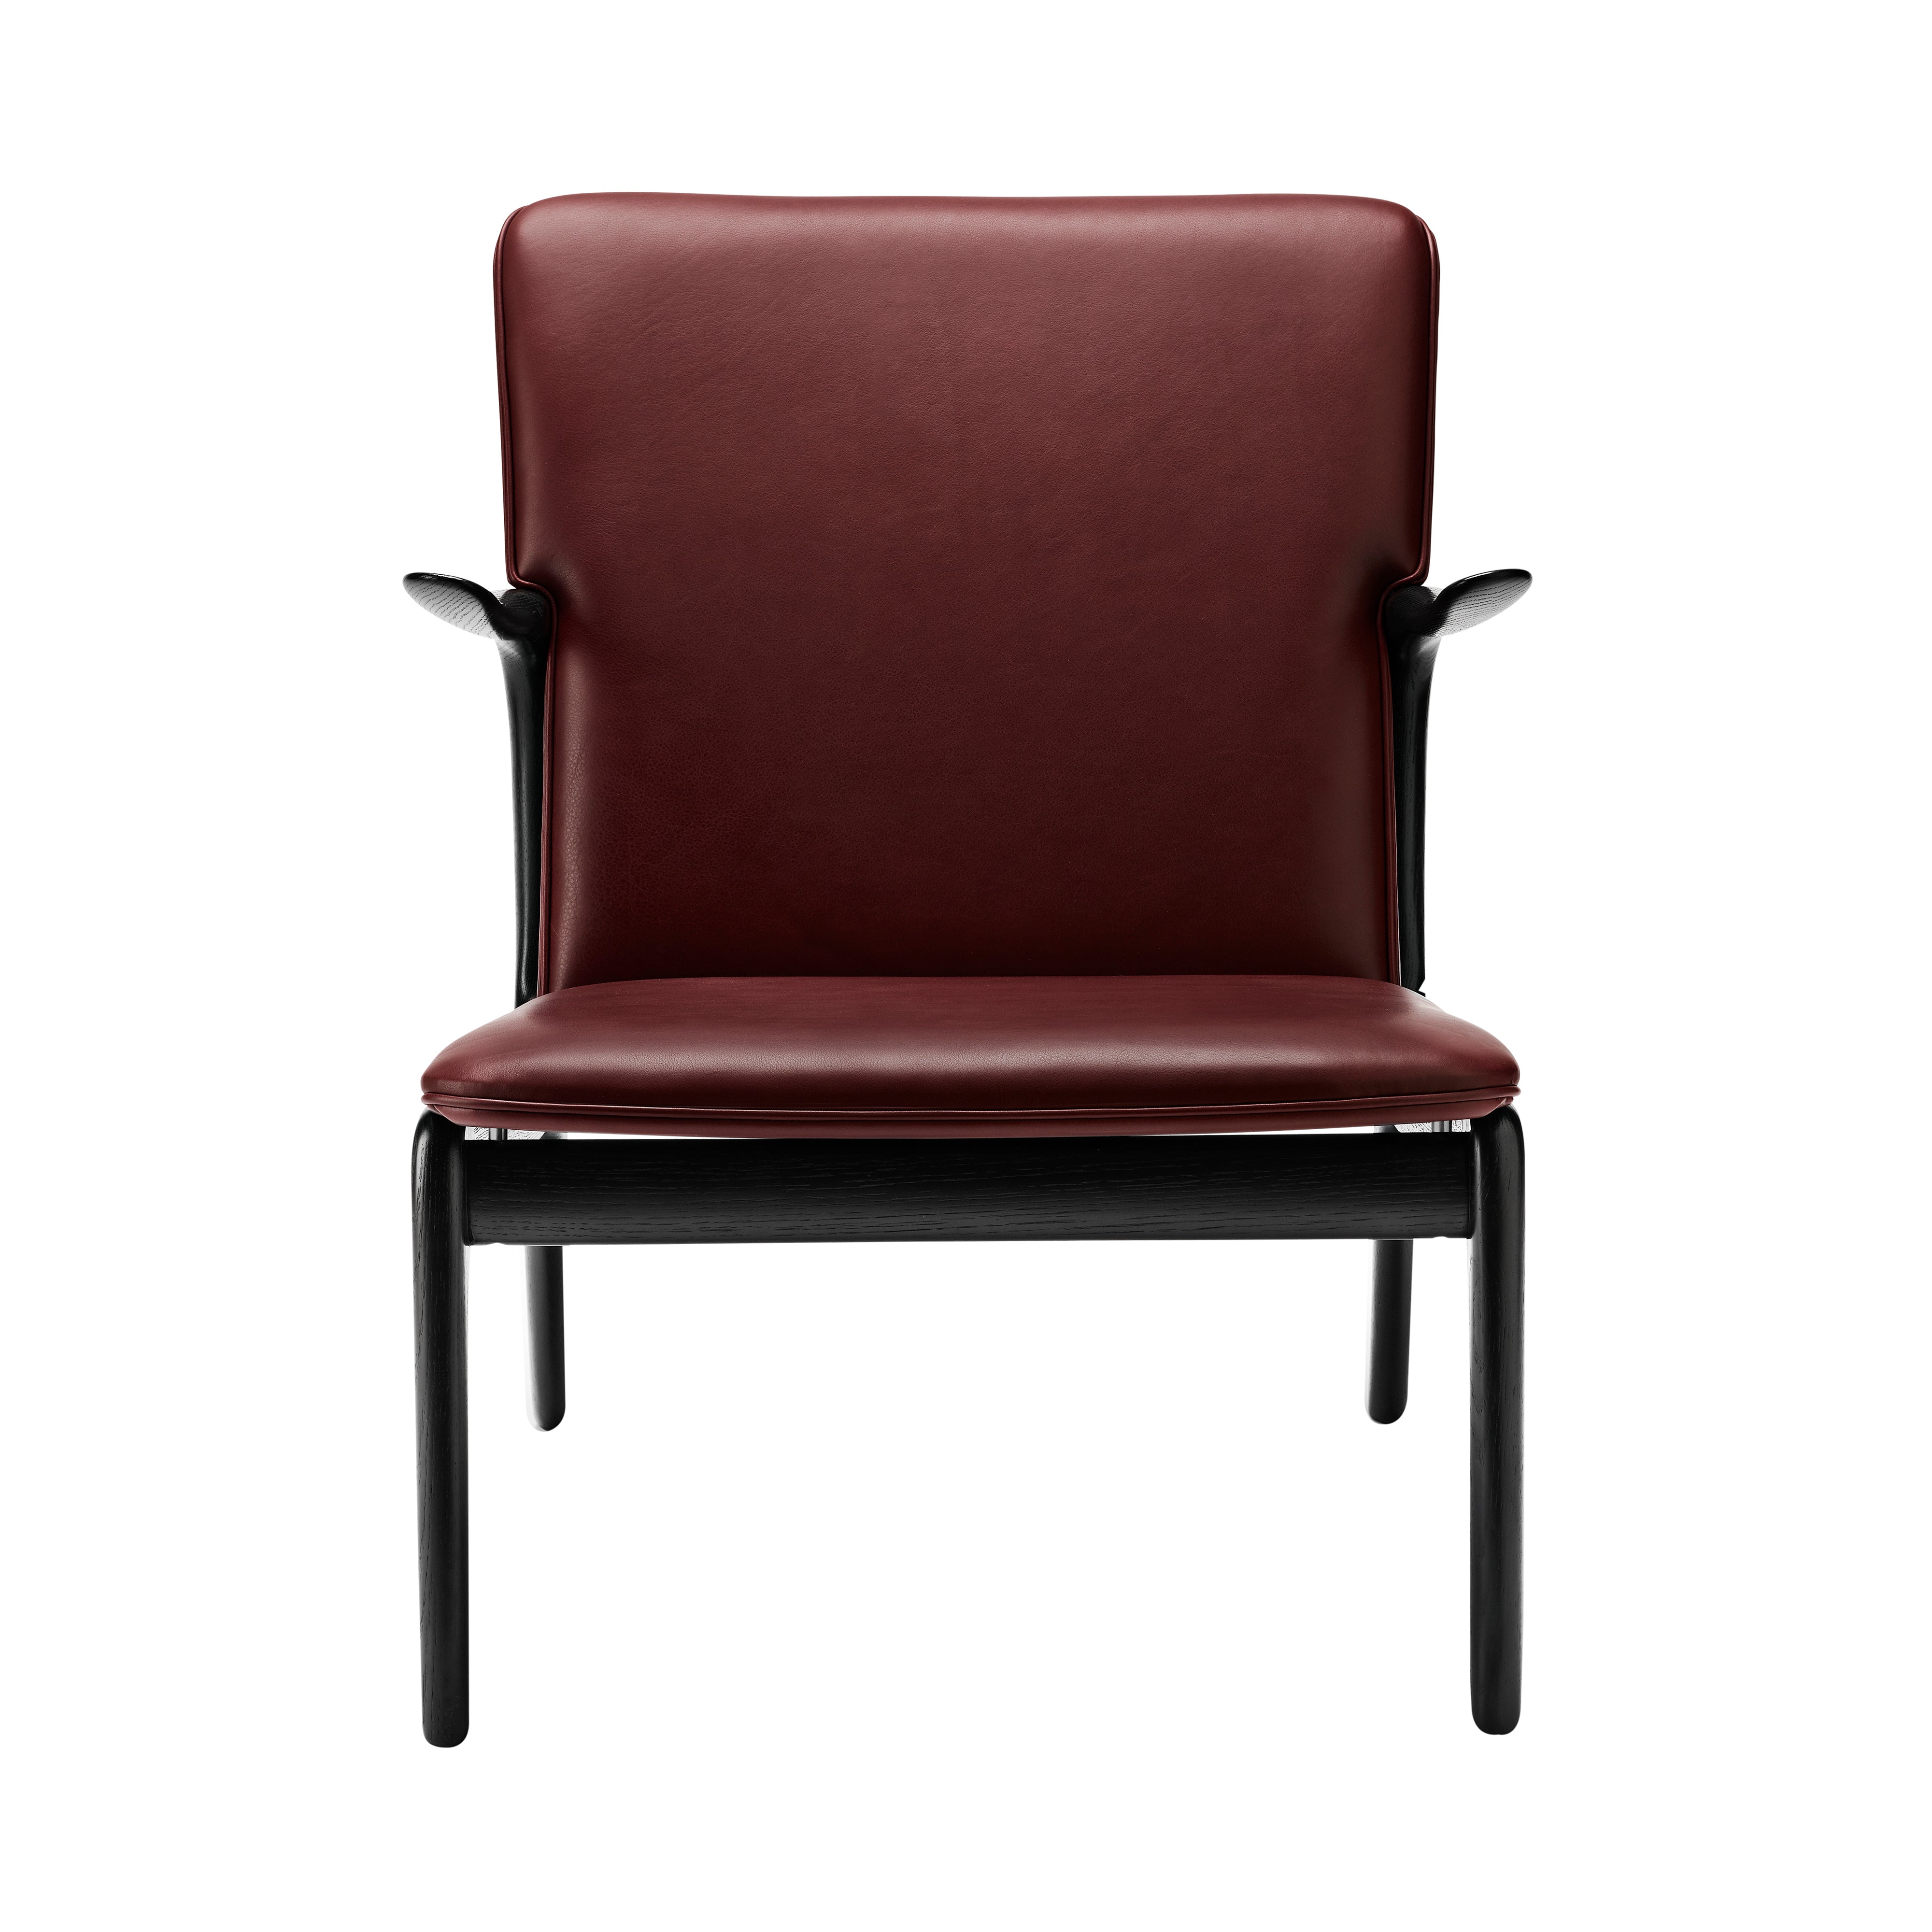 OW124 Beak Chair: Black Oak